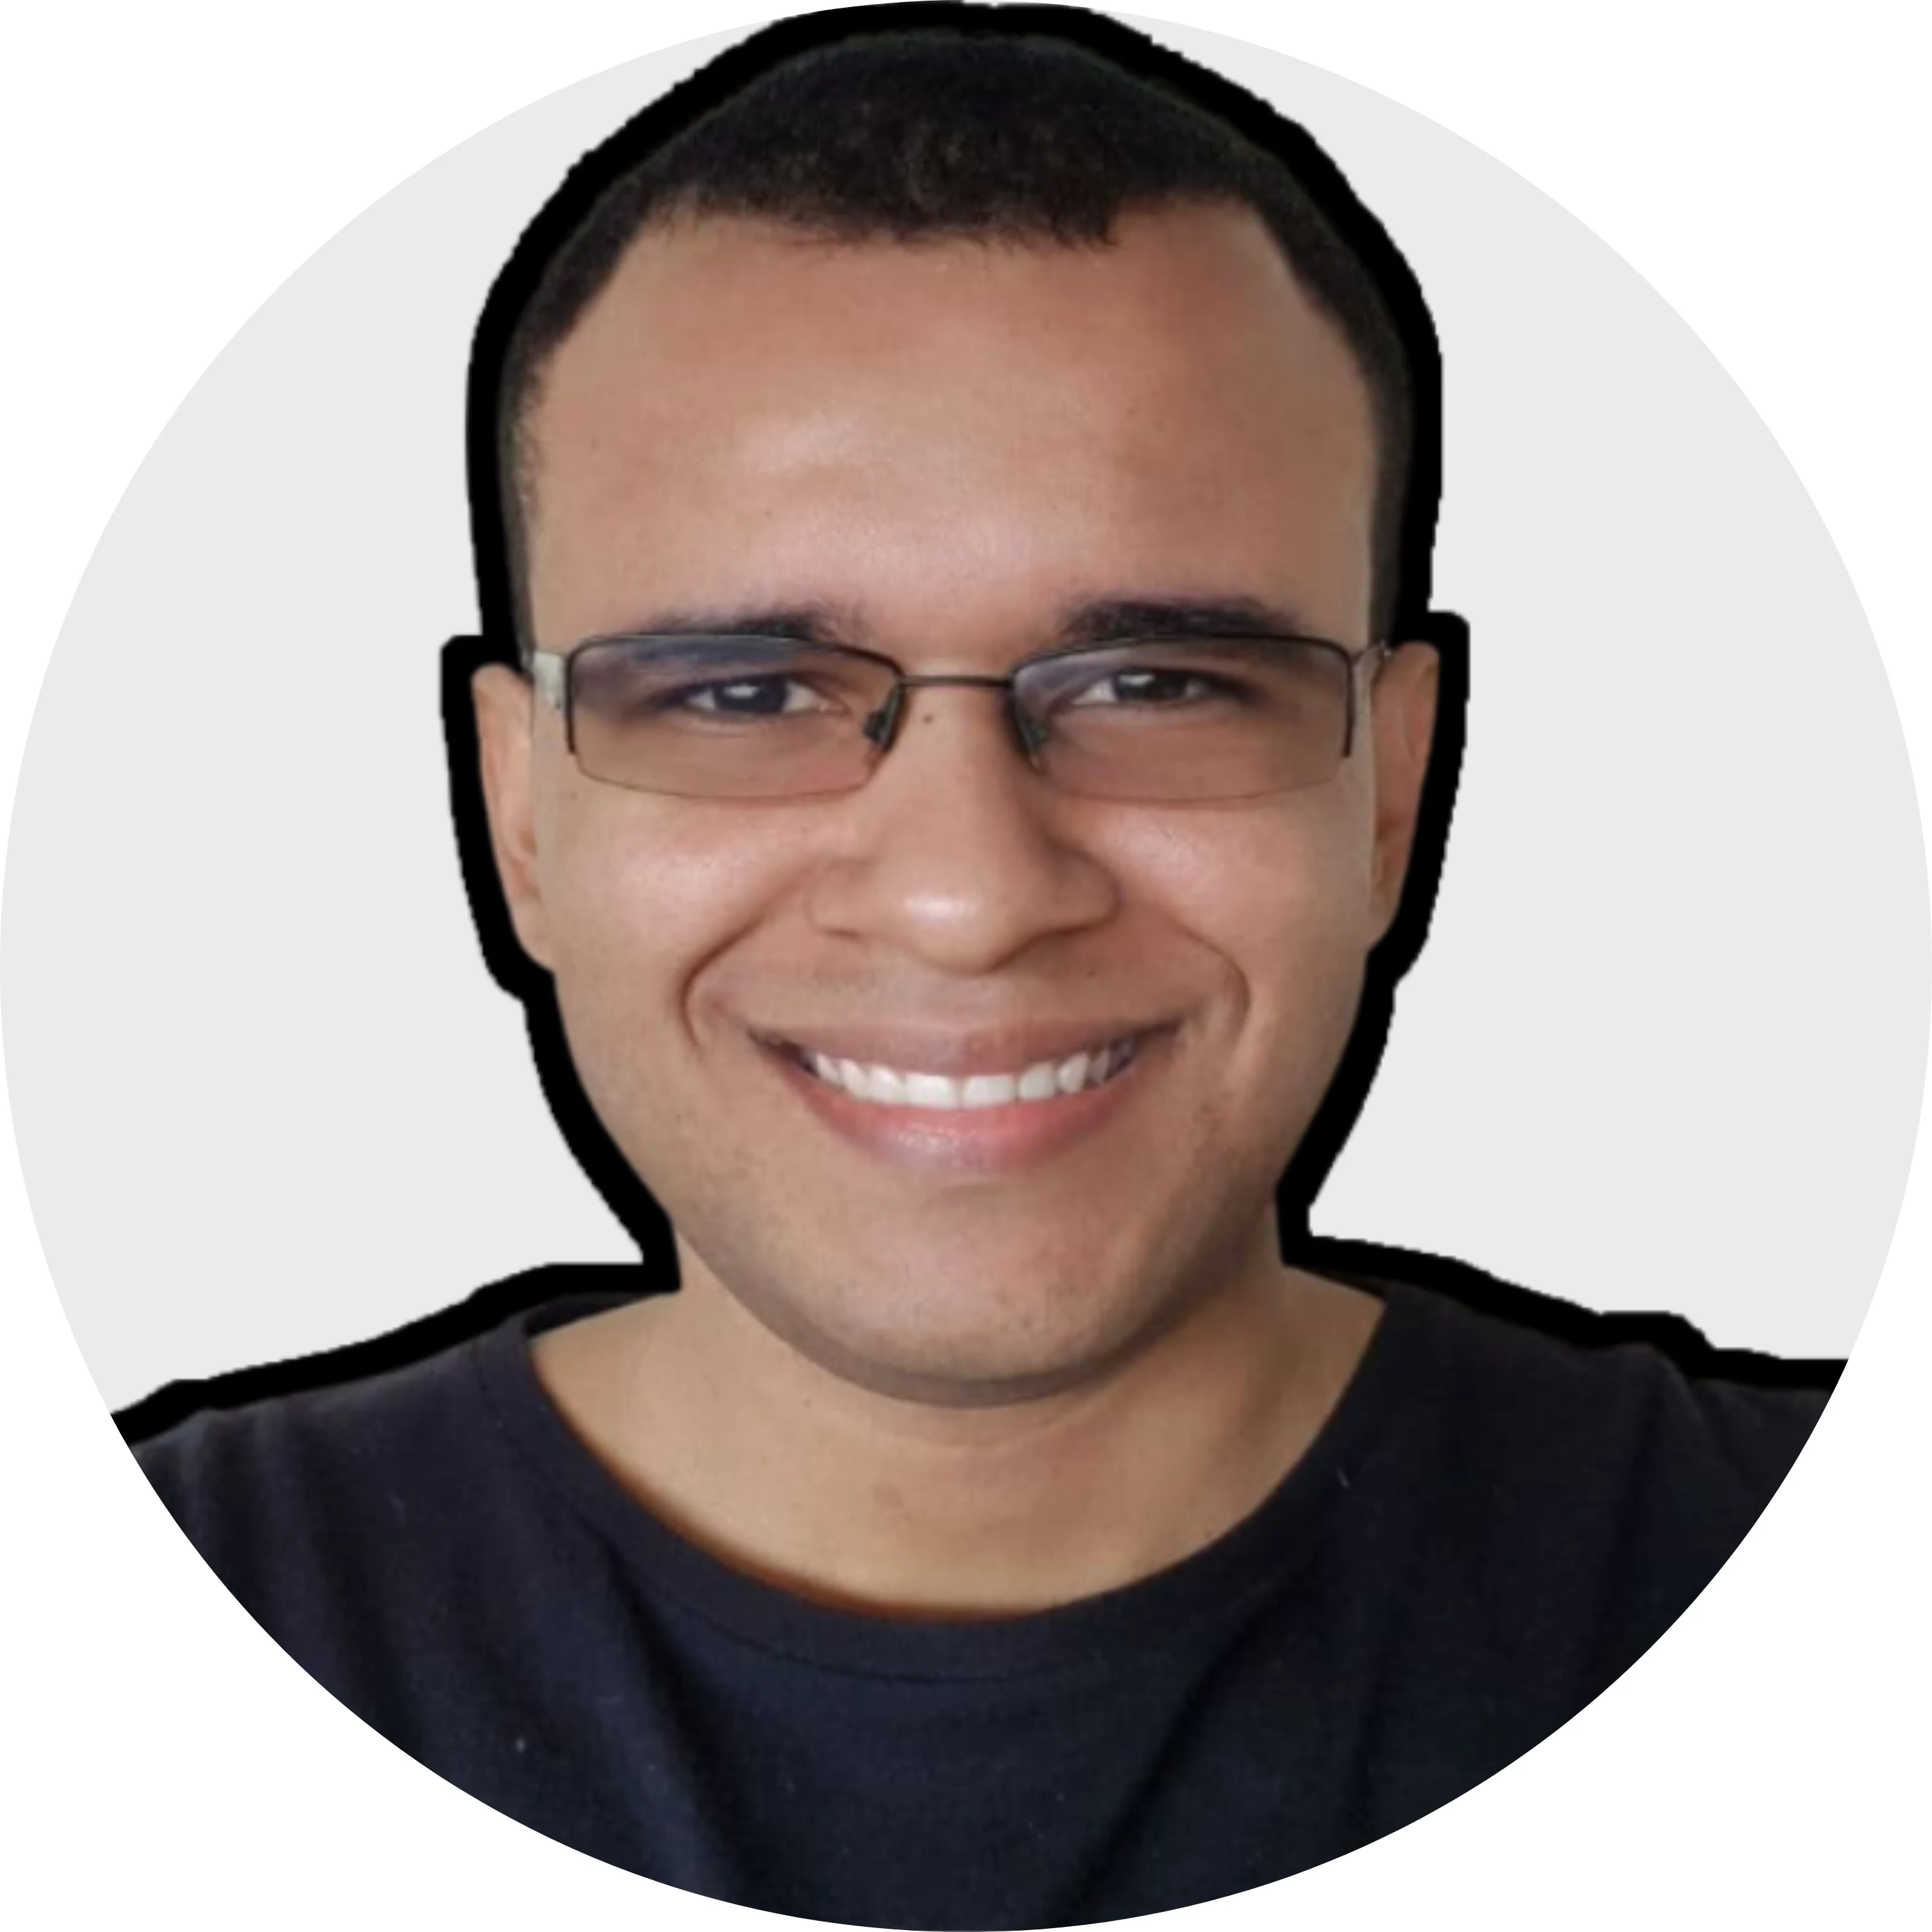 Hebert Phillipe Martins Pereira's avatar